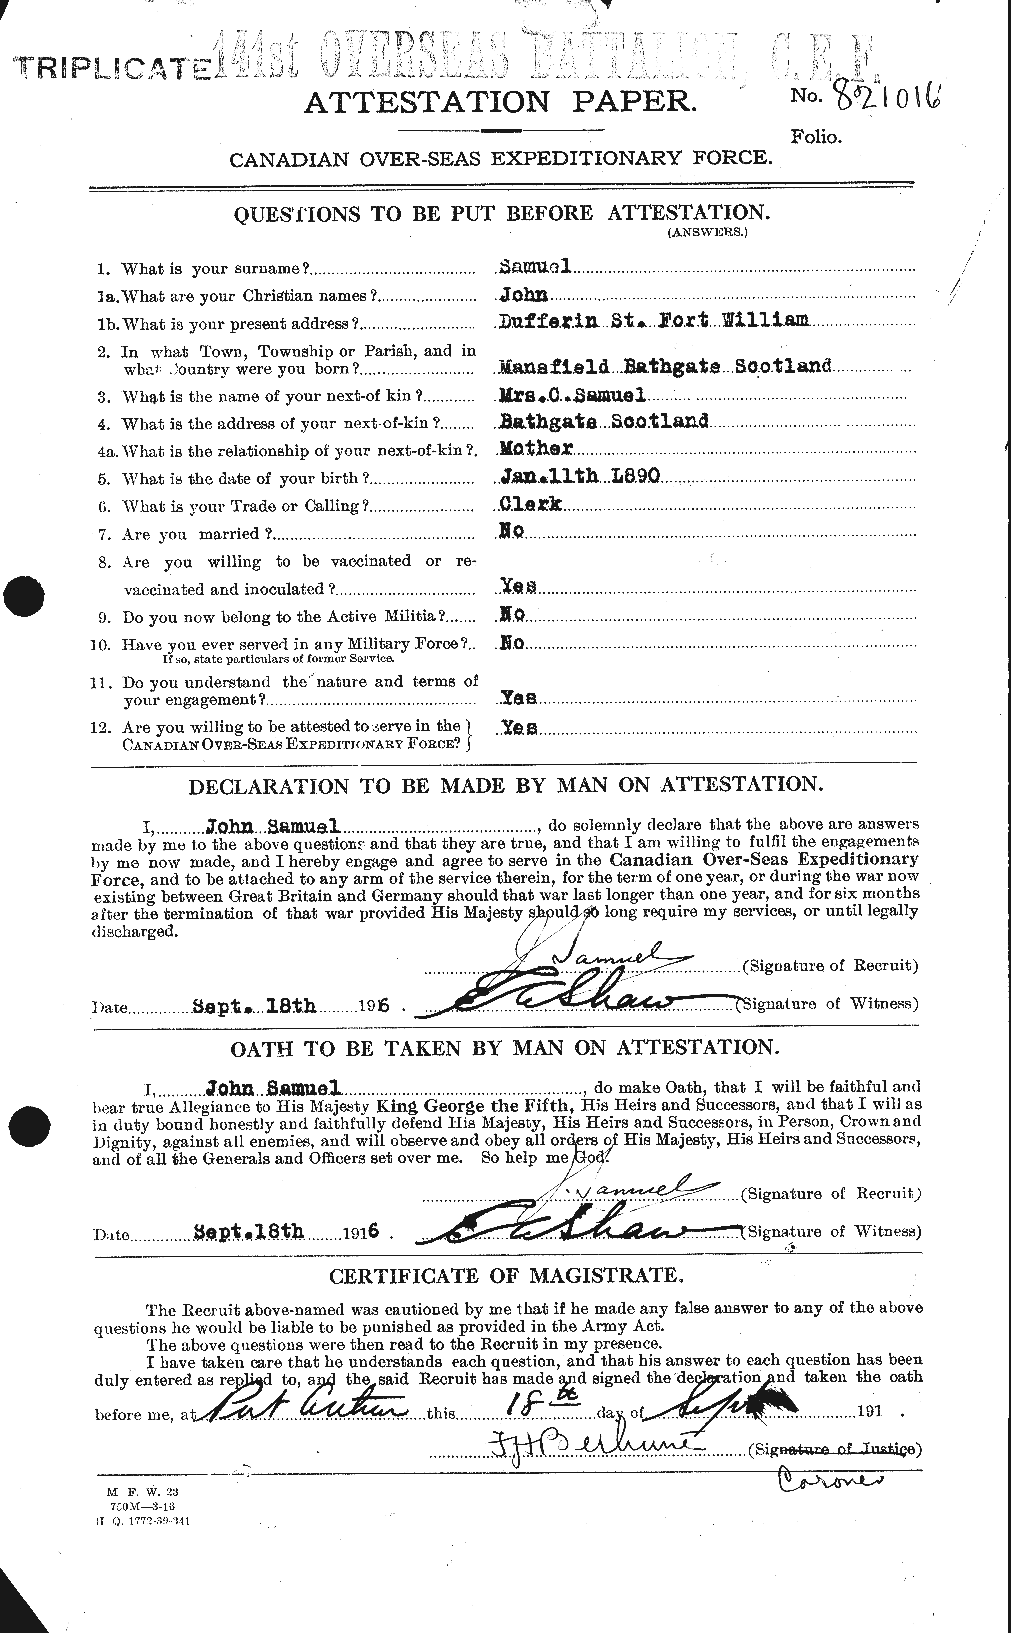 Dossiers du Personnel de la Première Guerre mondiale - CEC 076218a